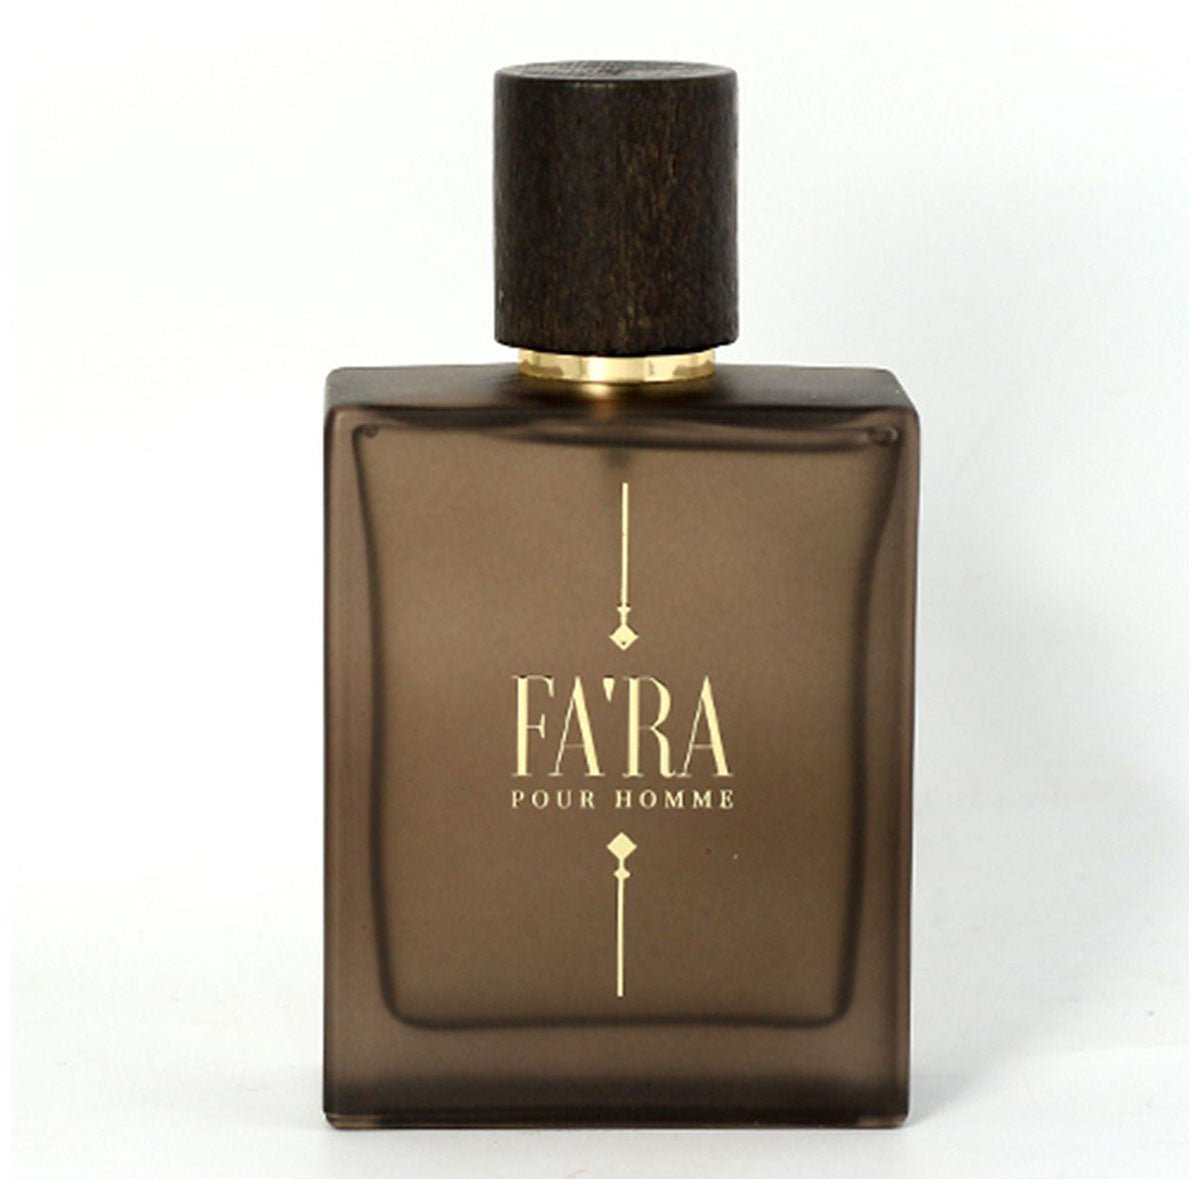 Fa'ra Pour Homme Perfume Edp For Men 100 ml-Perfume - AllurebeautypkFa'ra Pour Homme Perfume Edp For Men 100 ml-Perfume